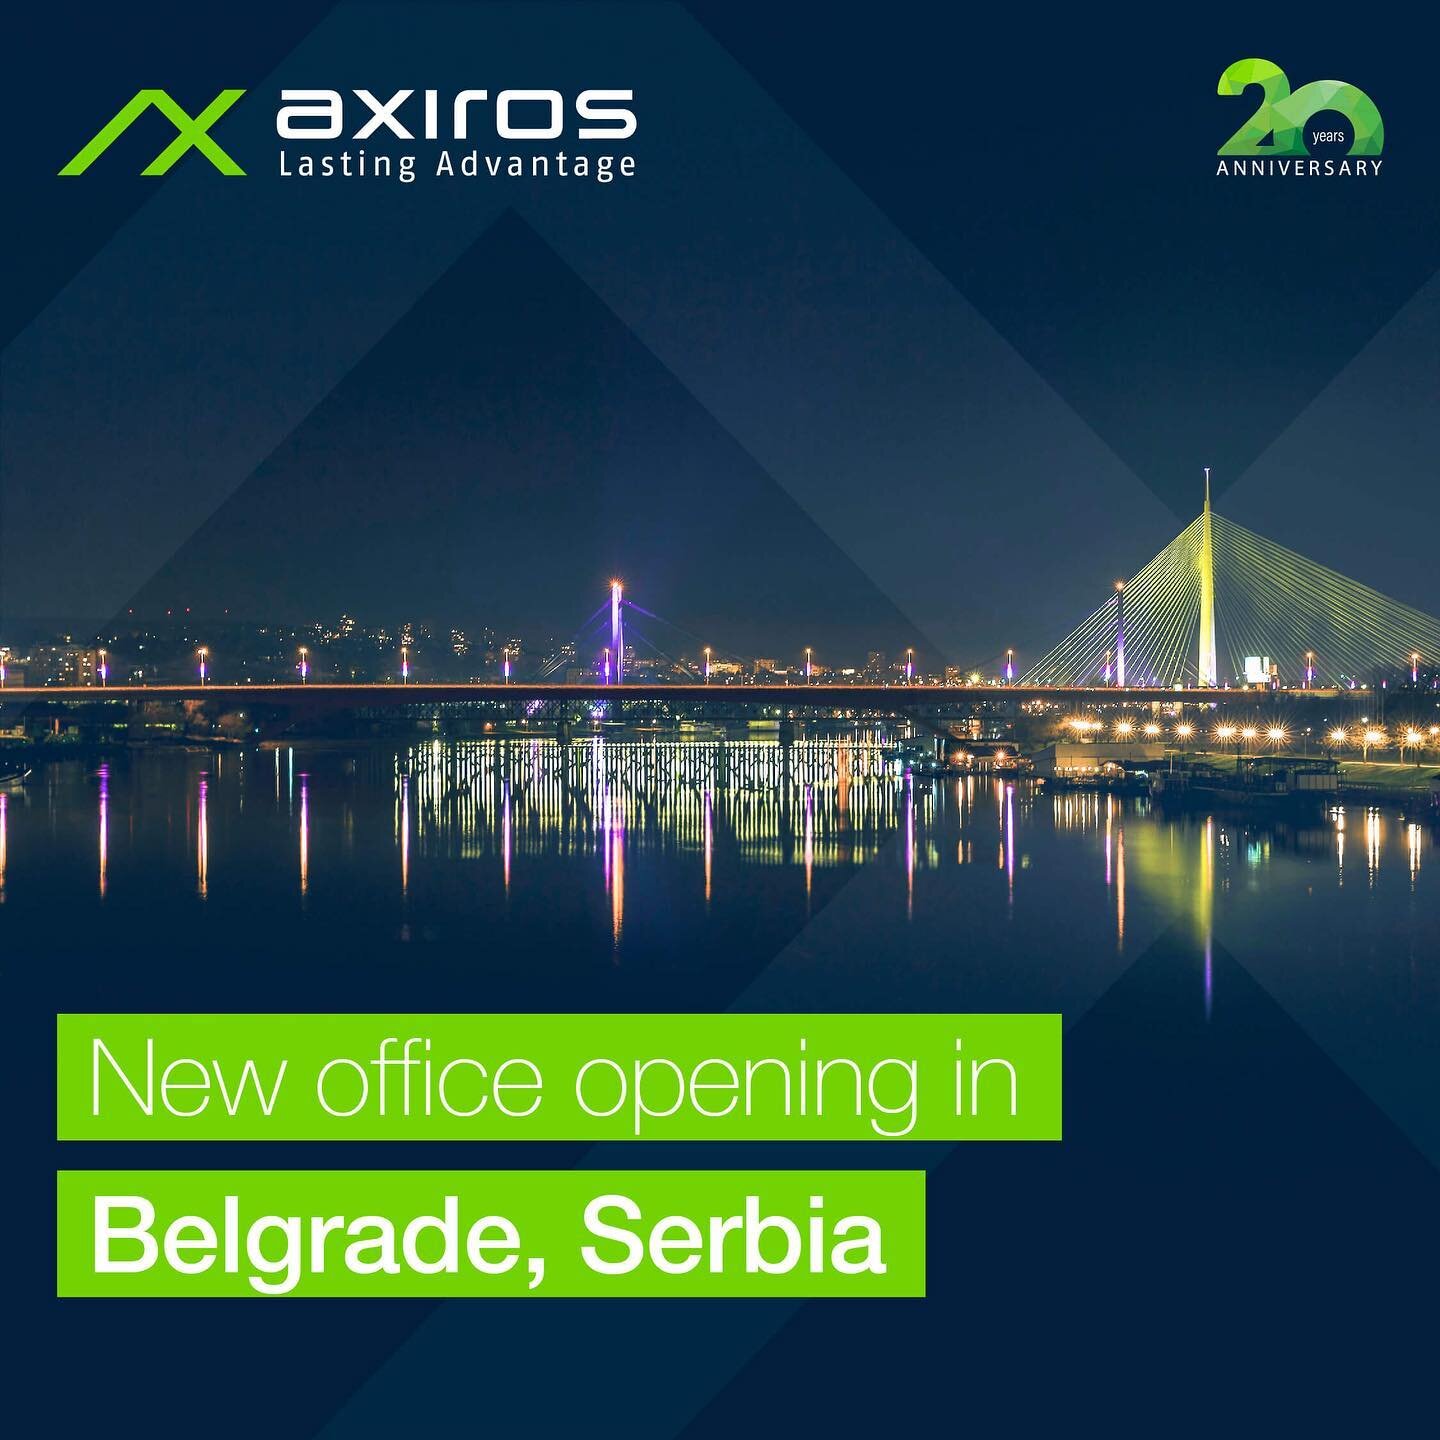 [Axiros News] Axiros grandit à nouveau ! 🌍🚀

Axiros a établi un nouveau bureau à Belgrade, la capitale de la Serbie, dans le cadre de l'expansion mondiale continue de l'entreprise. ➡️ Vous pouvez lire l'annonce complète - lien dans la bio !

Nous tenons à remercier tous les